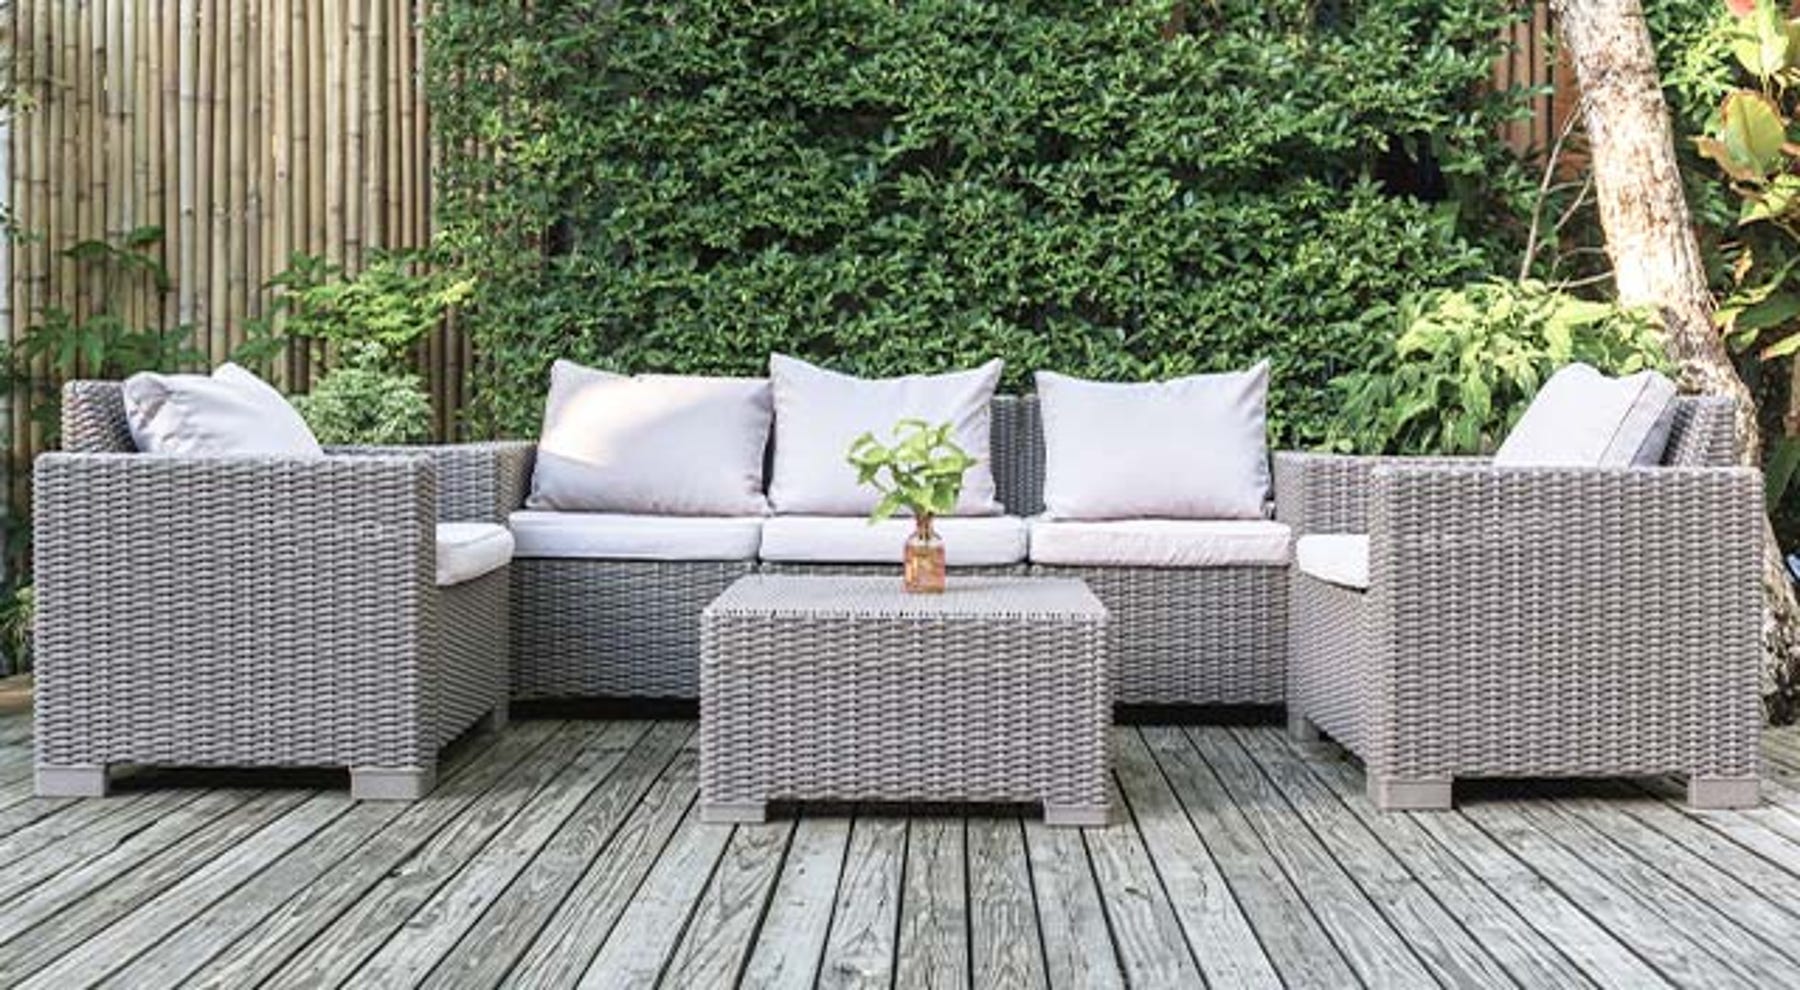 Acheter un meuble de jardin : 5 choses à regarder pour mieux